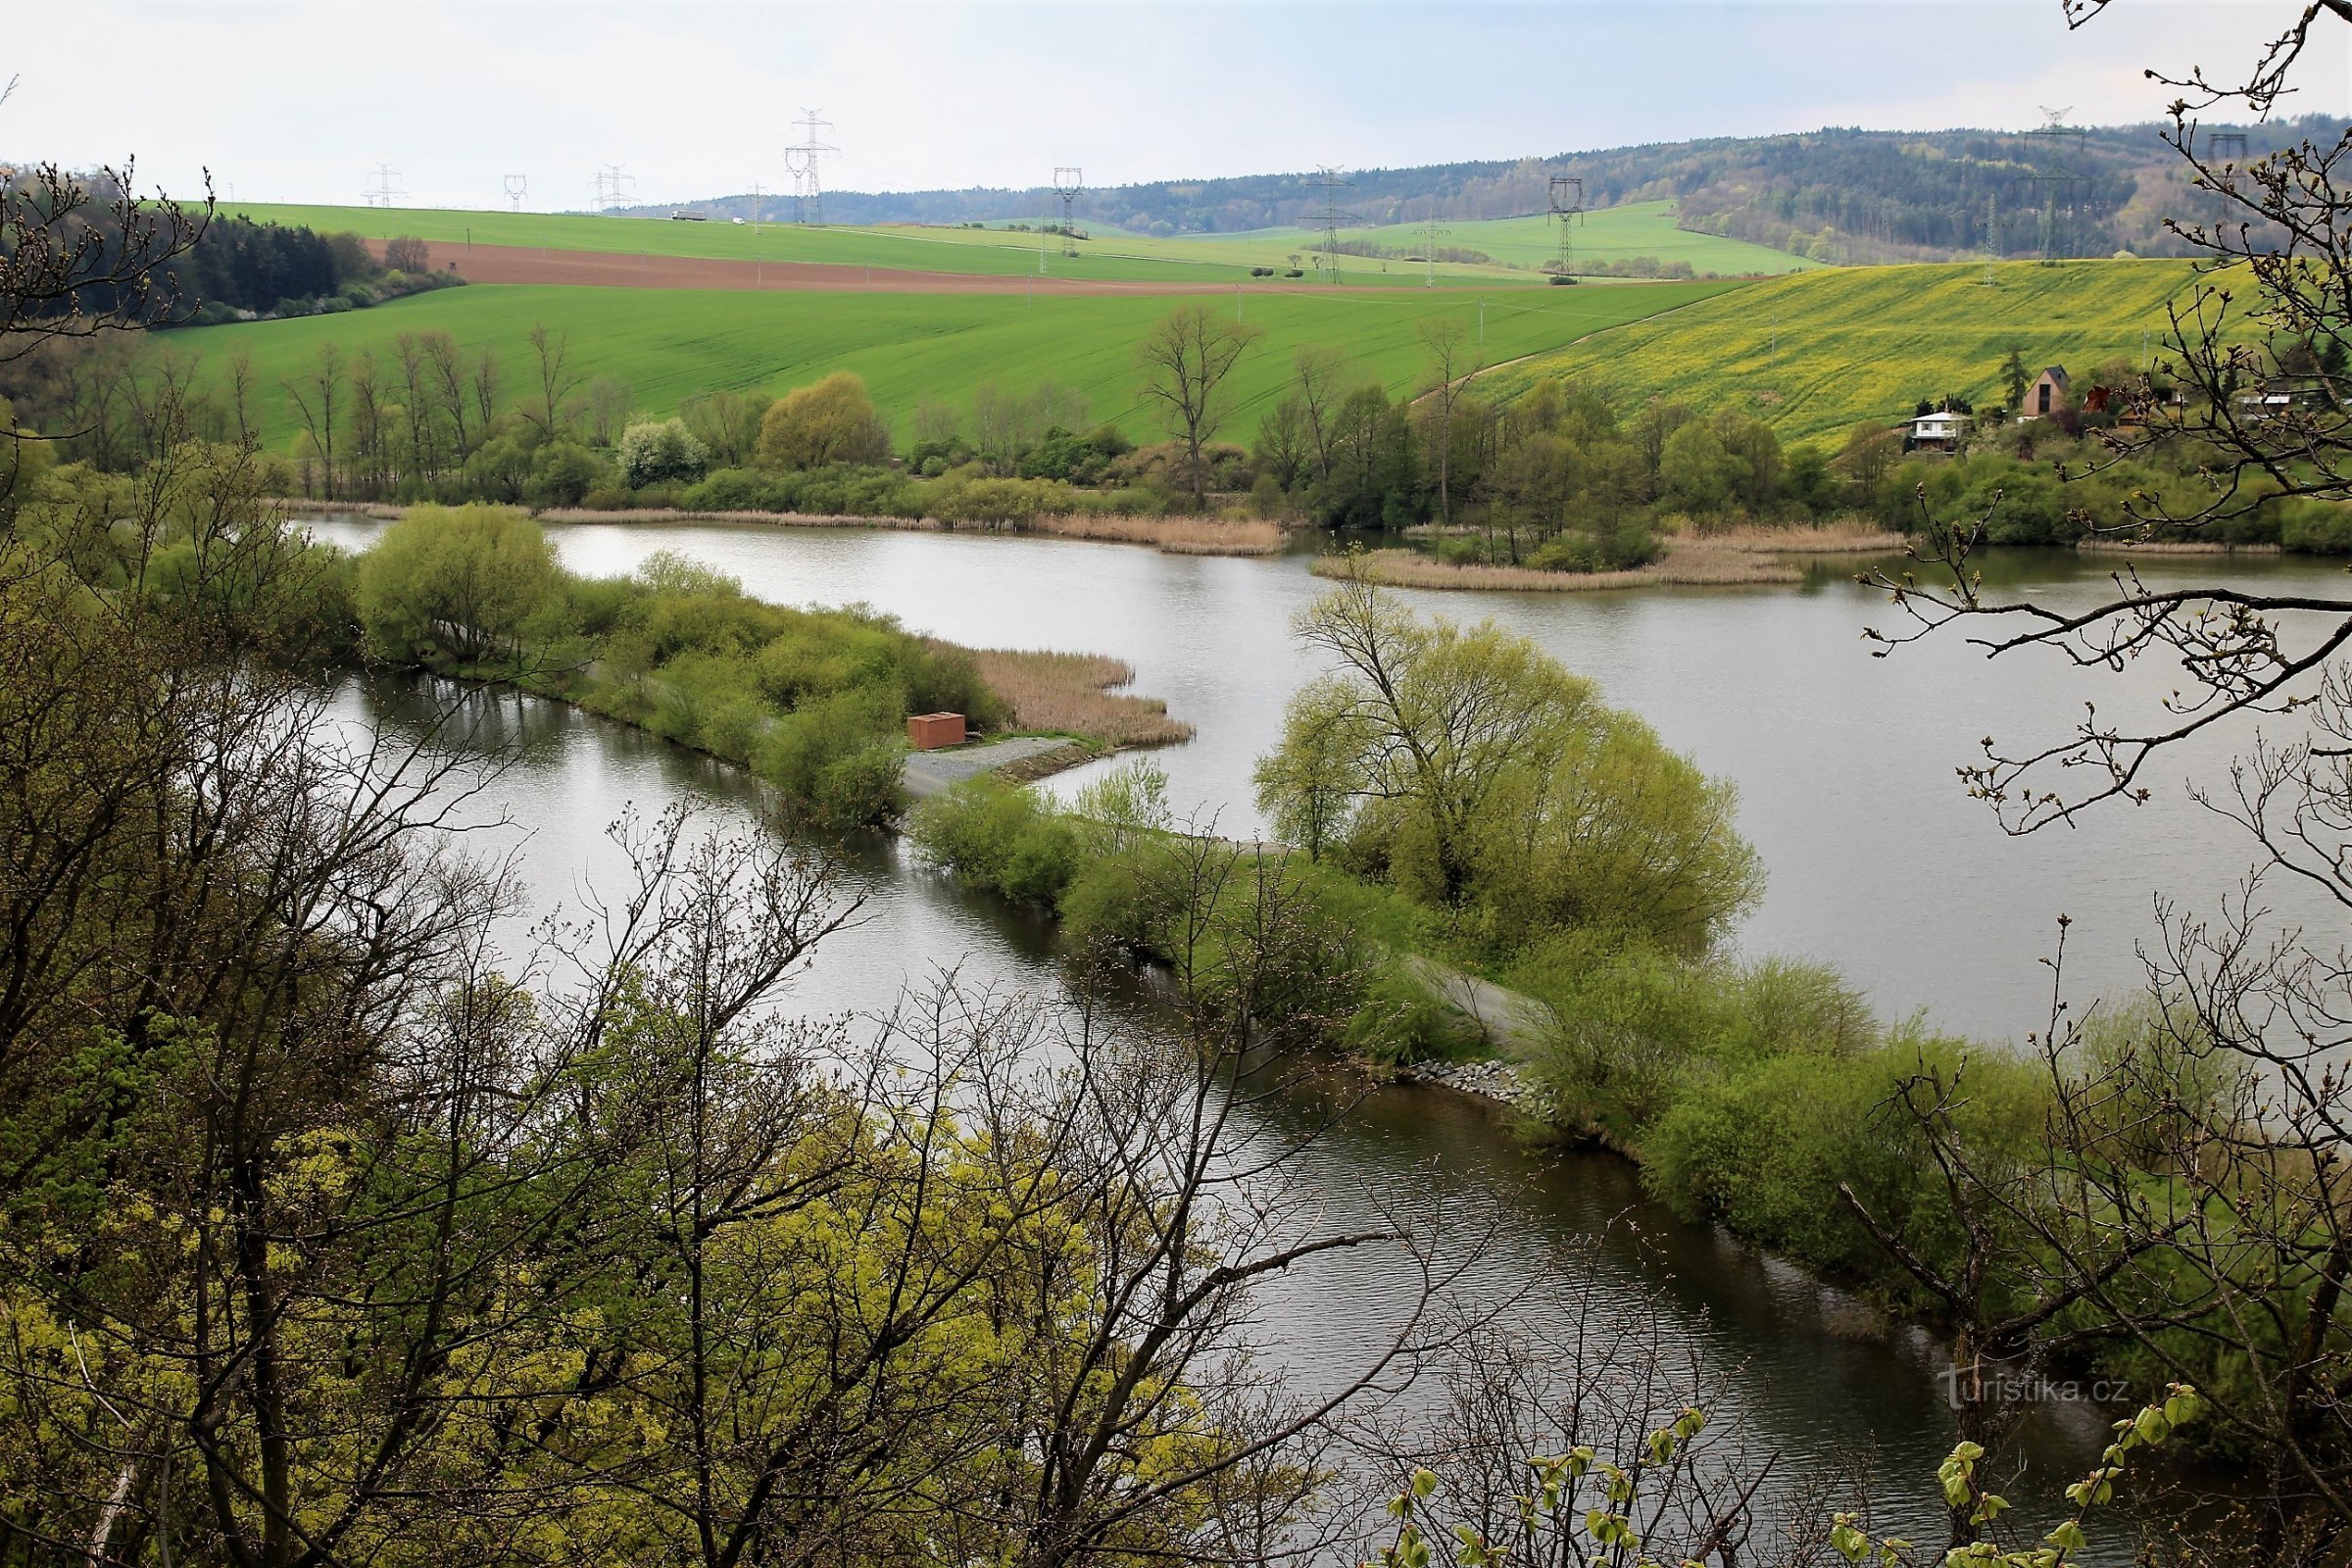 Blick auf den Sumpf vom Aussichtspunkt auf der gelben Markierung, im Vordergrund das Ende des Damms am Fluss Svratka